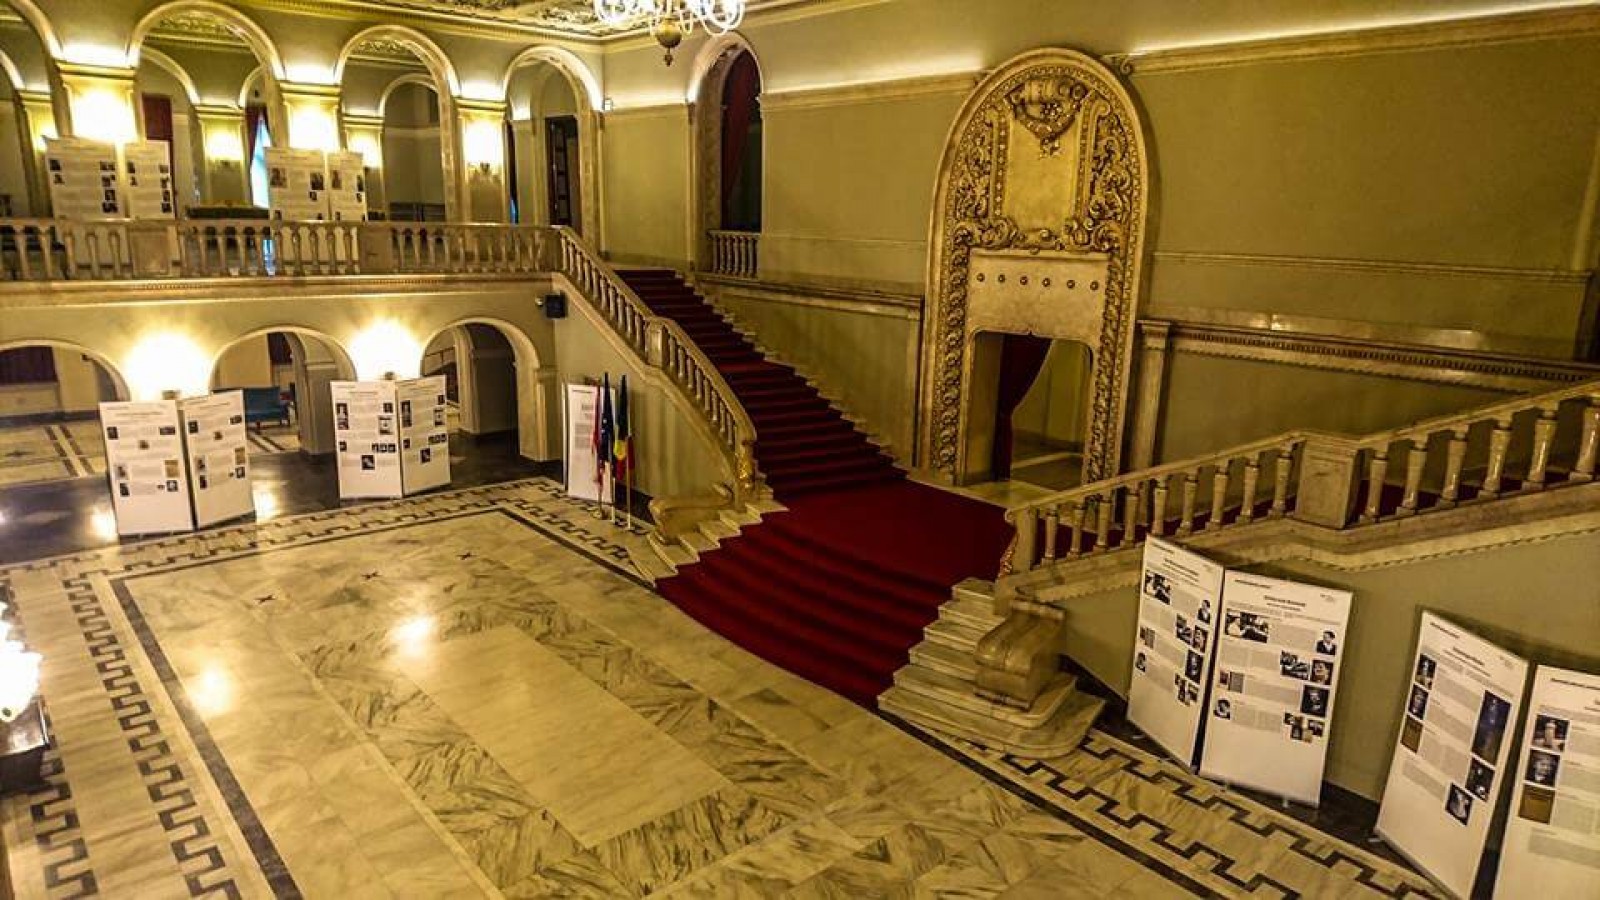 Opera Națională București